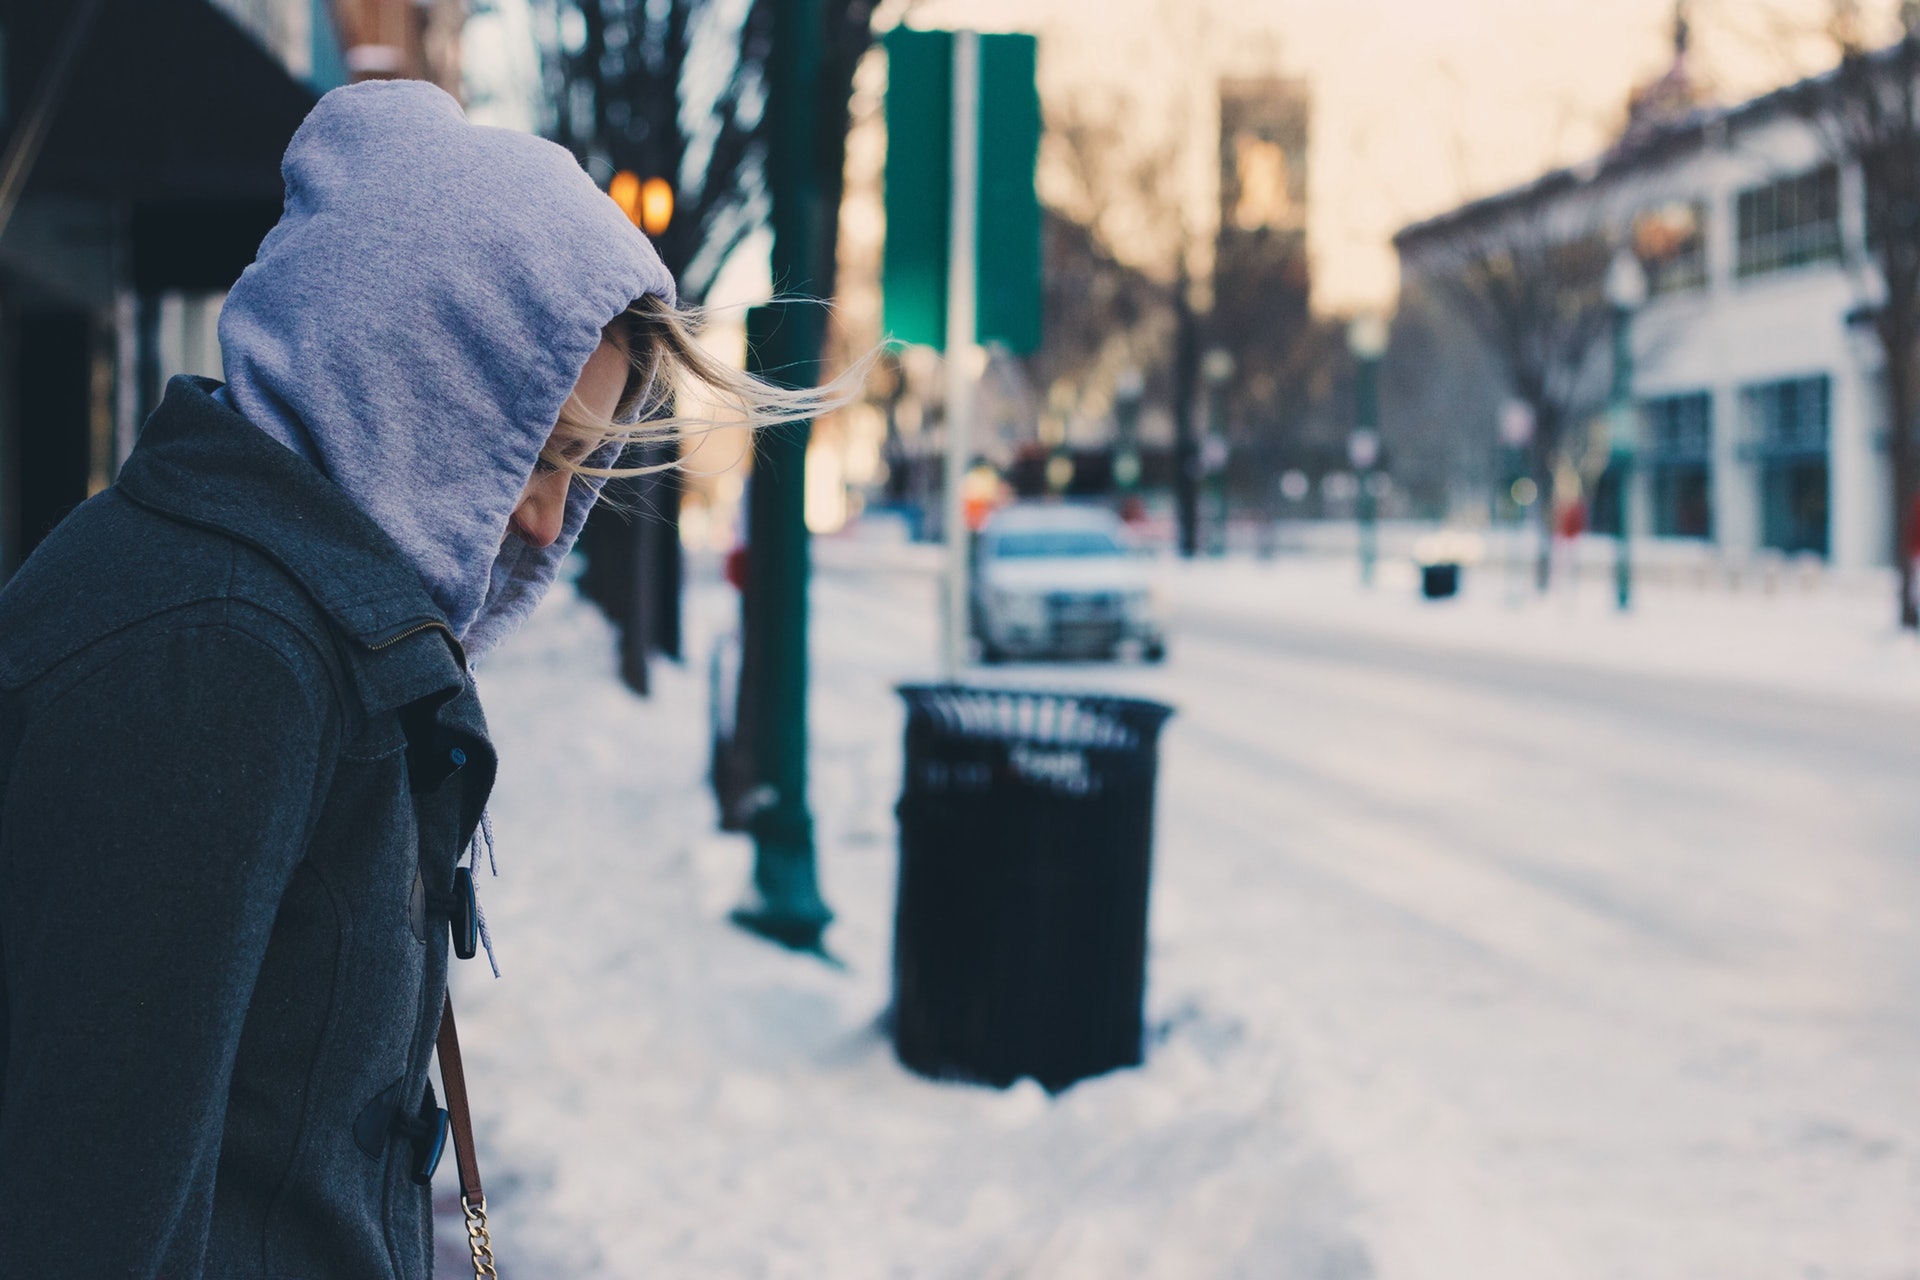 冬天風大，不少人都會加添衣物保暖，飲茶也有一定暖身功效。（Sarah Vilardo/unsplash）